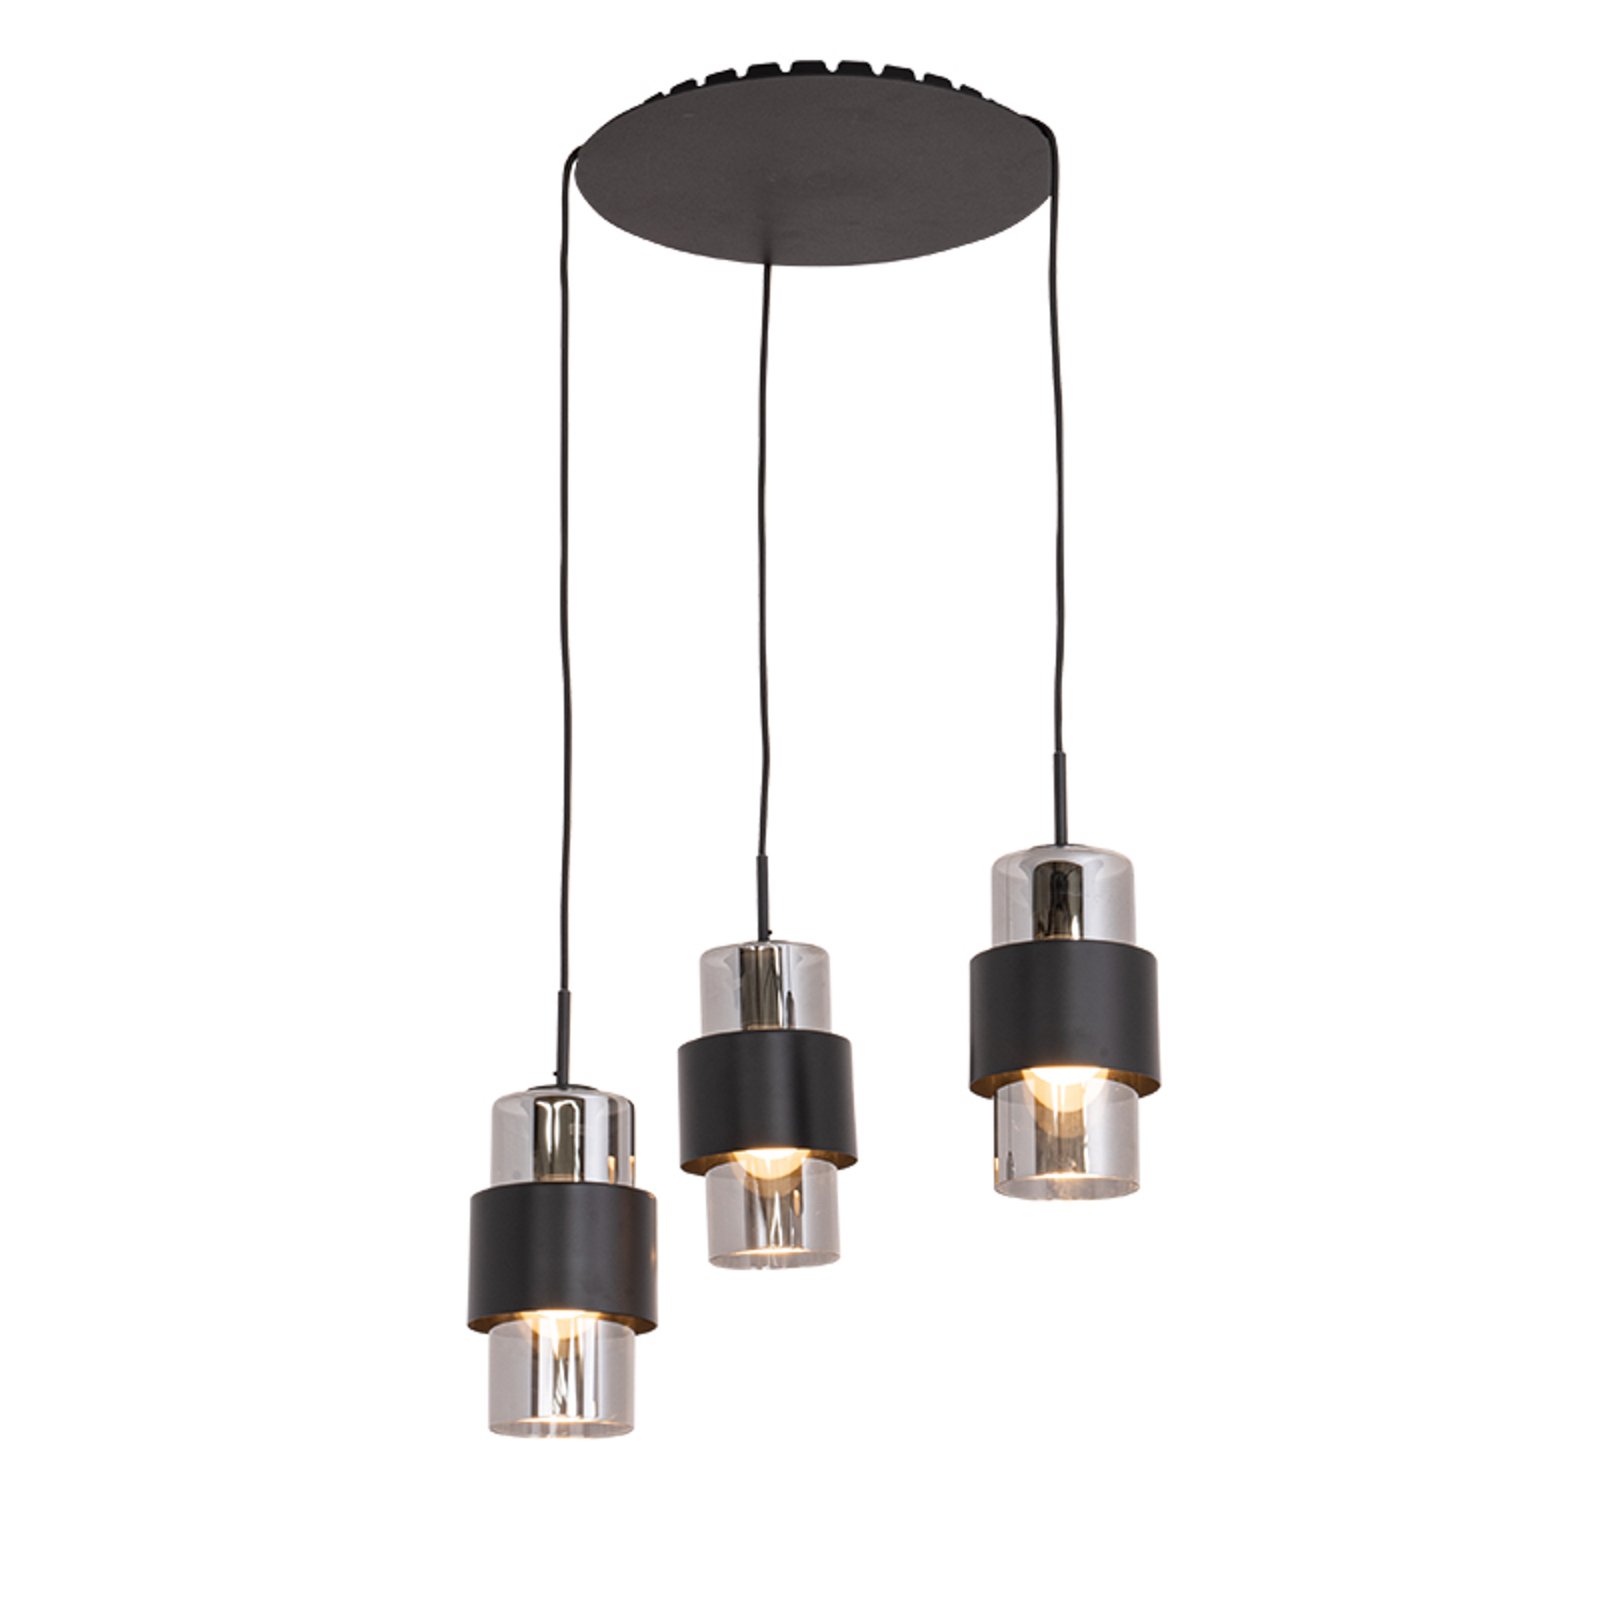 Hanglamp 22141 3-lamps Ø 45 cm zwart/chroom